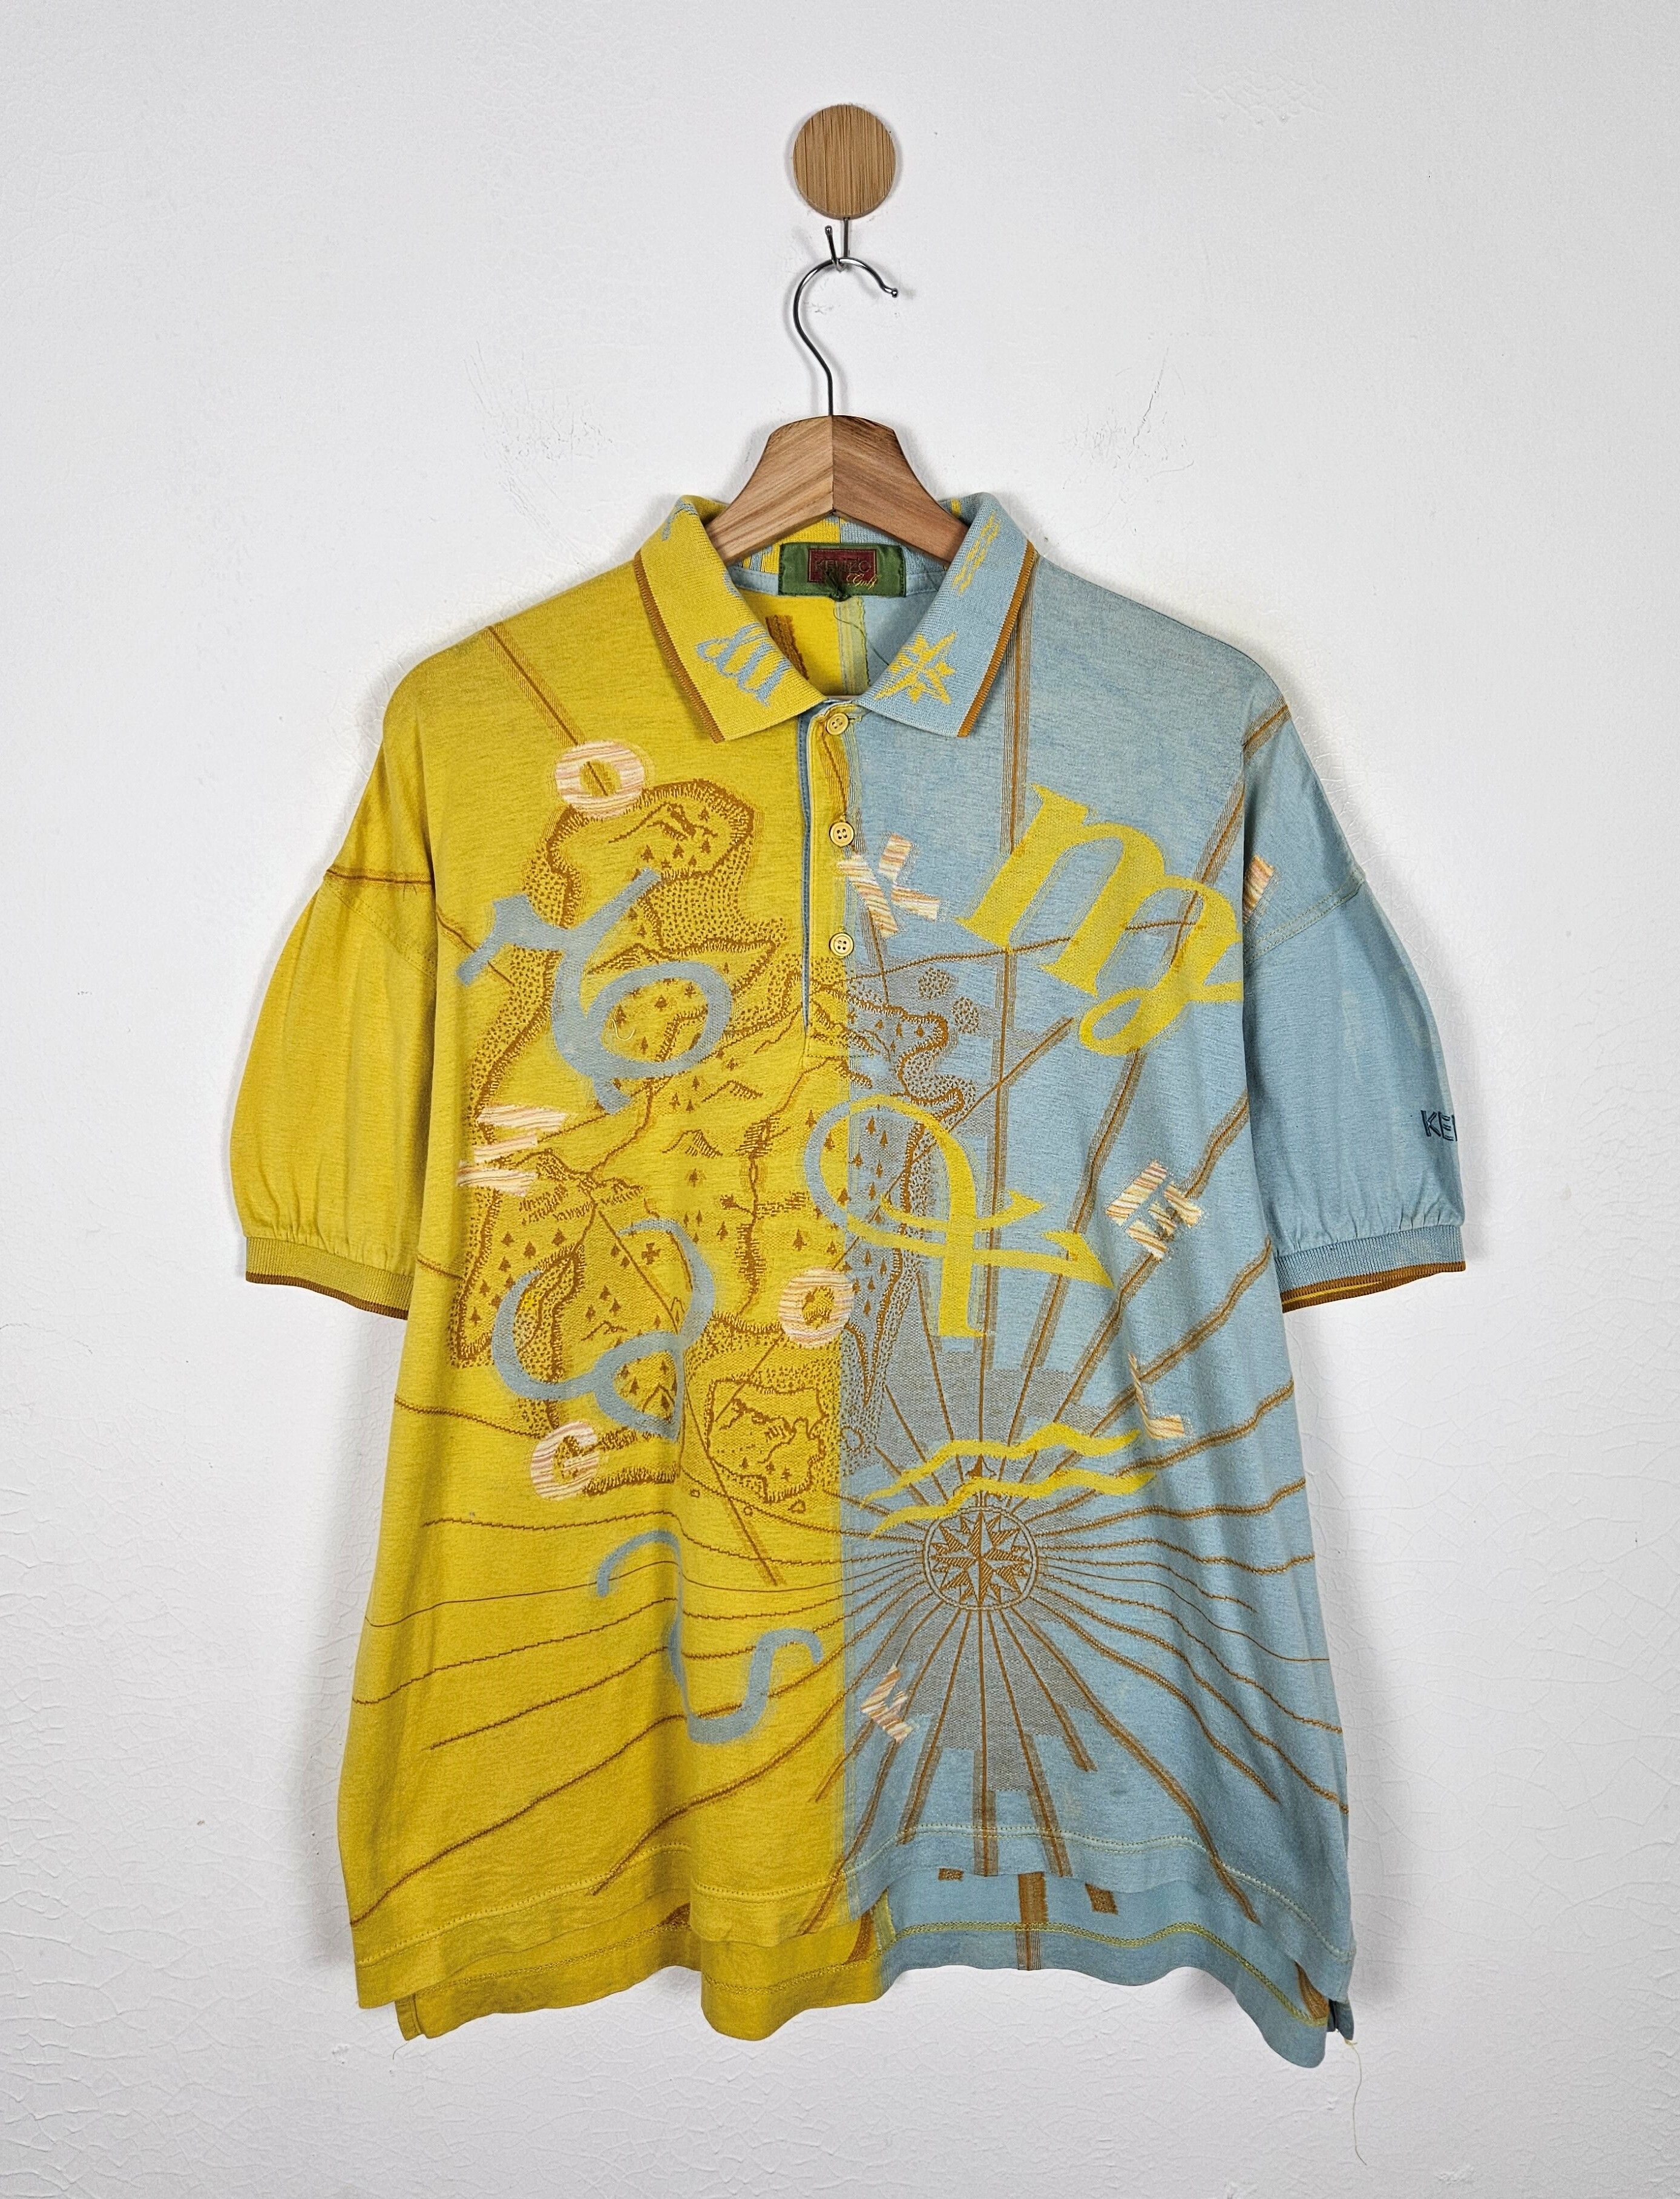 Vintage Kenzo Golf Polo Map shirt - 1